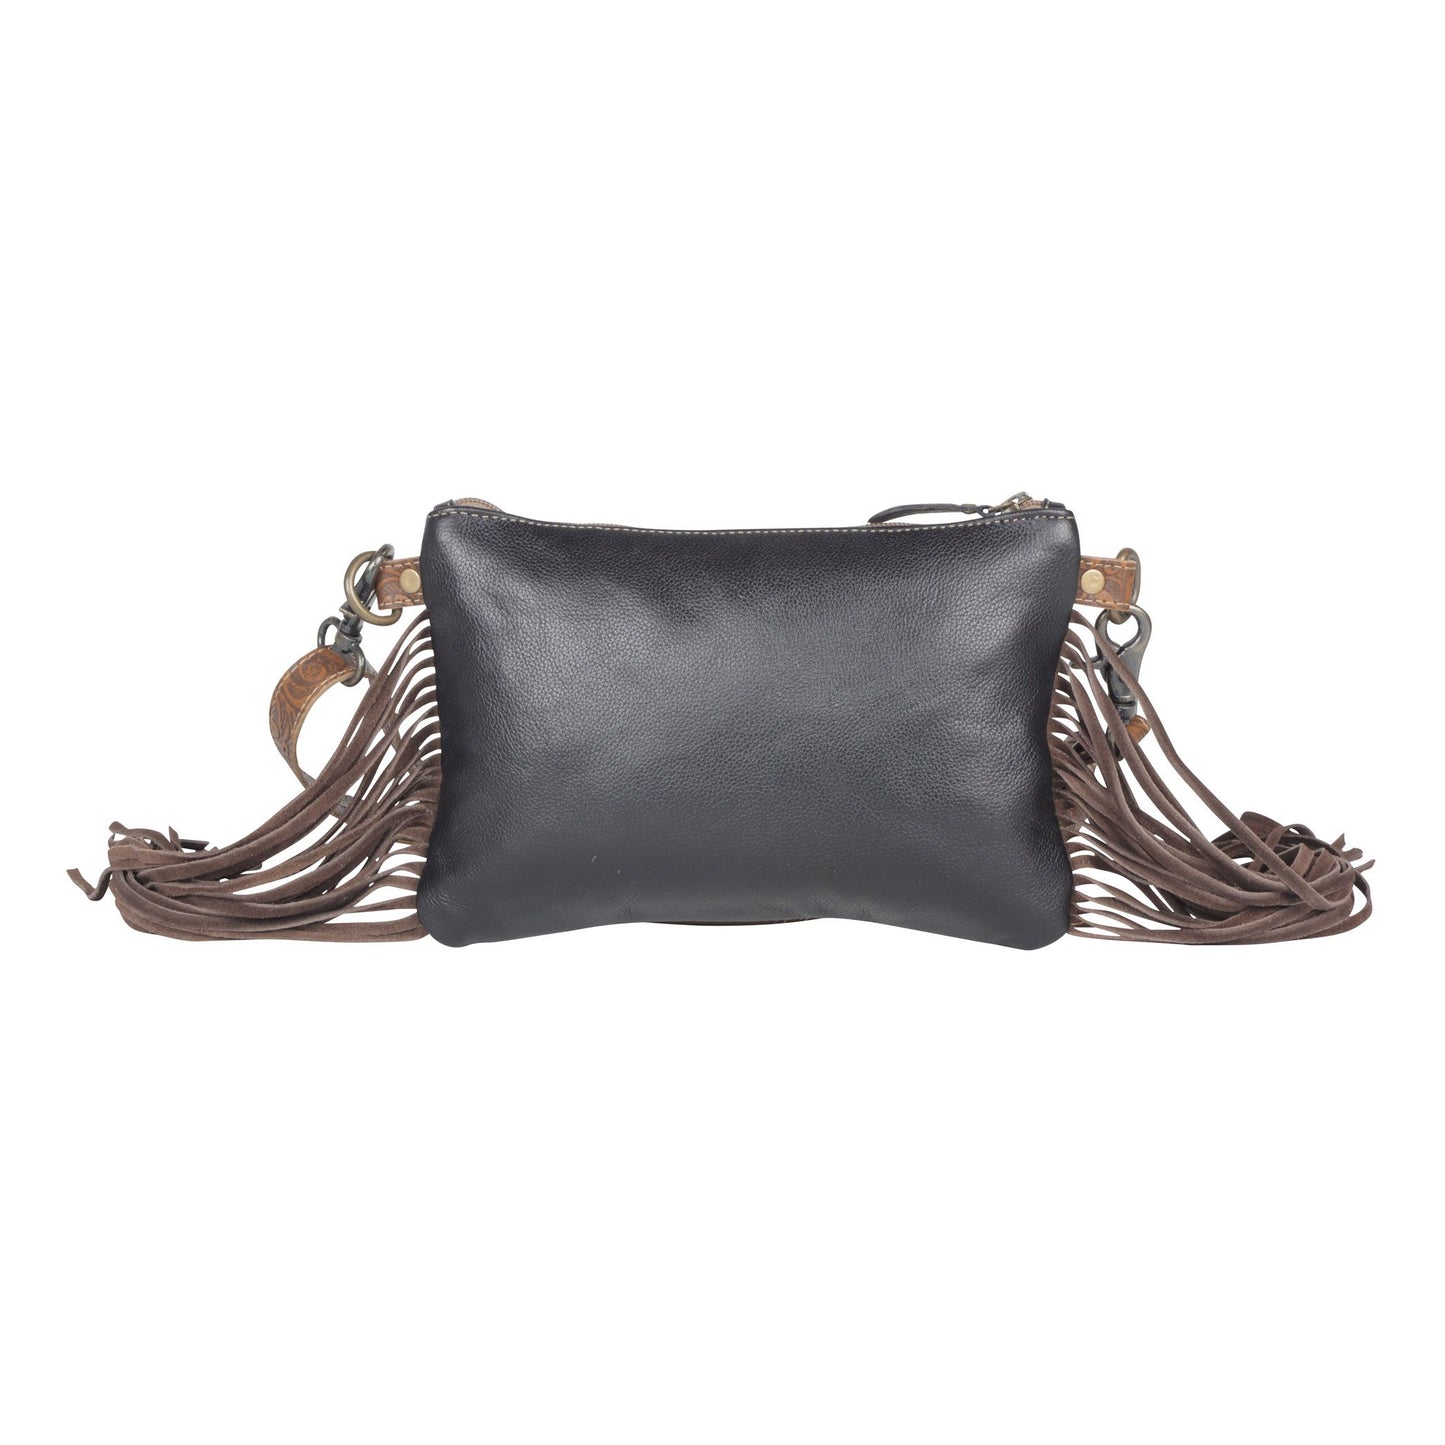 Art Decor Leather Bag with Fringe